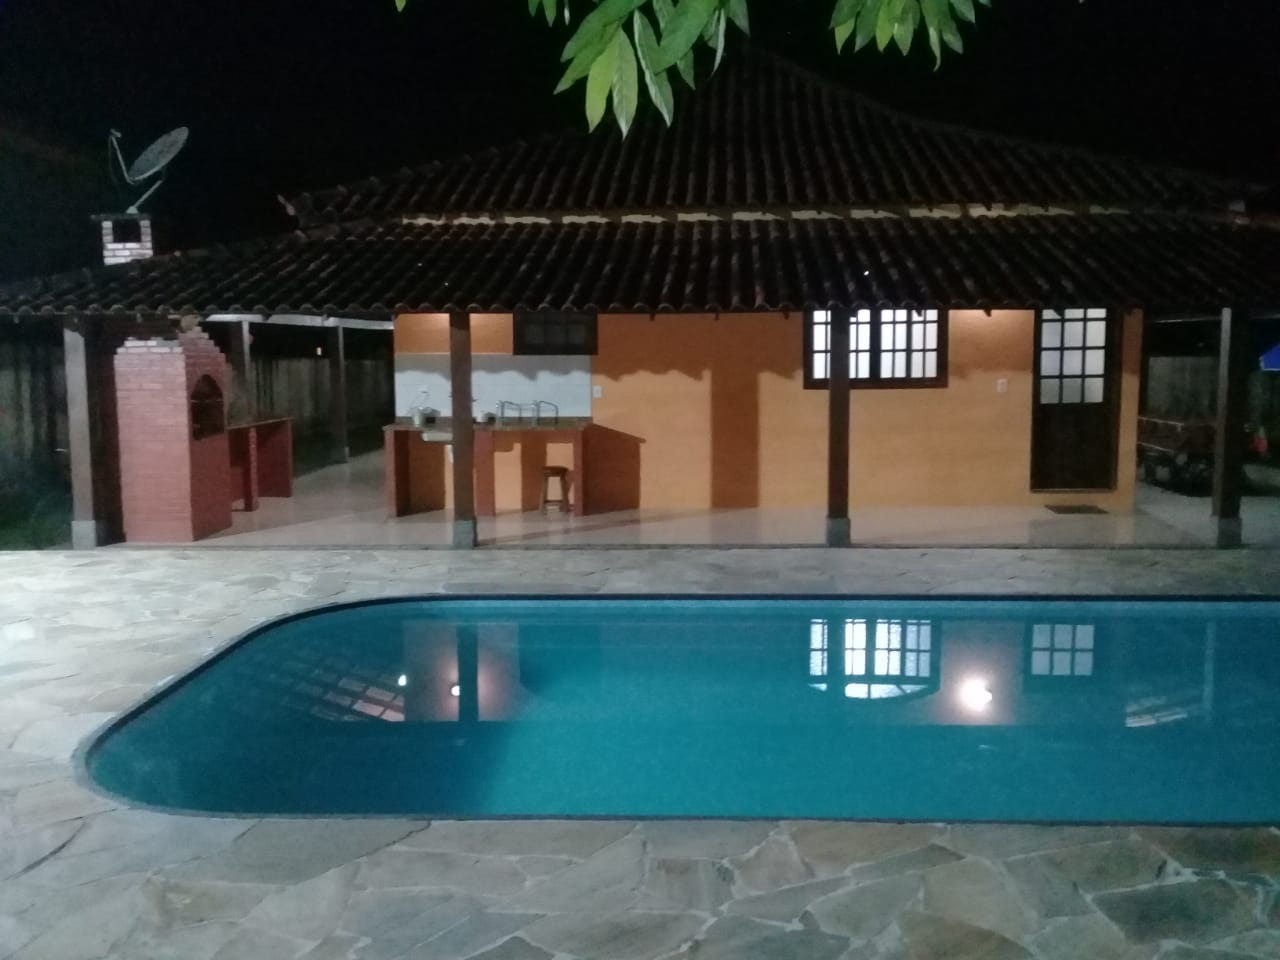 Casa em condomínio - Venda, Caneca Fina, Guapimirim, RJ